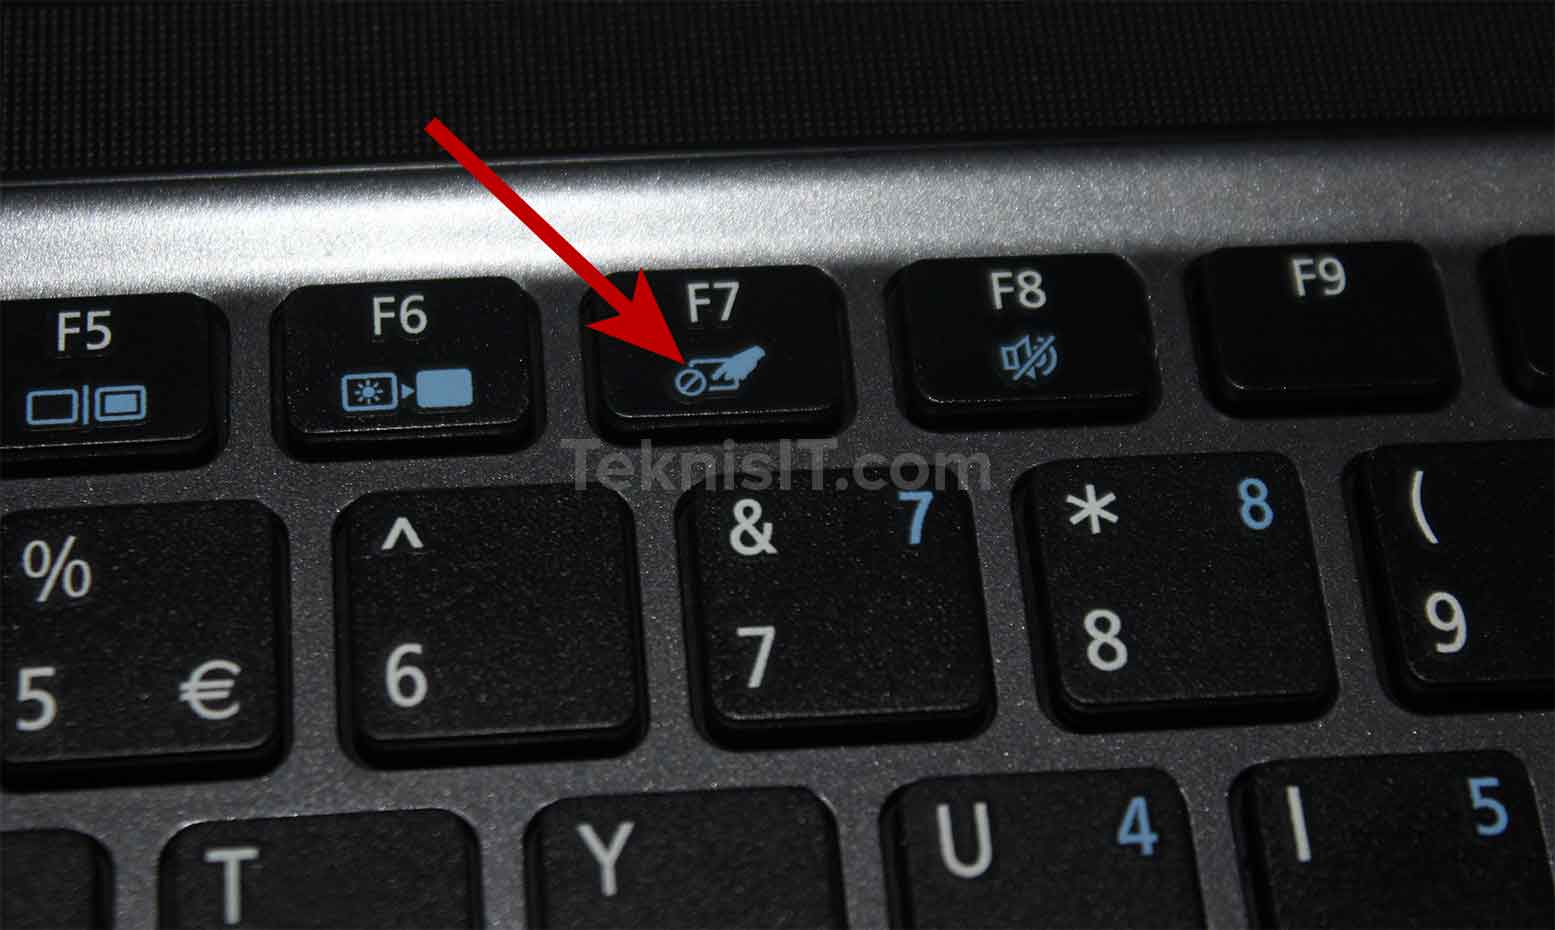 Cara mengaktifkan touchpad laptop